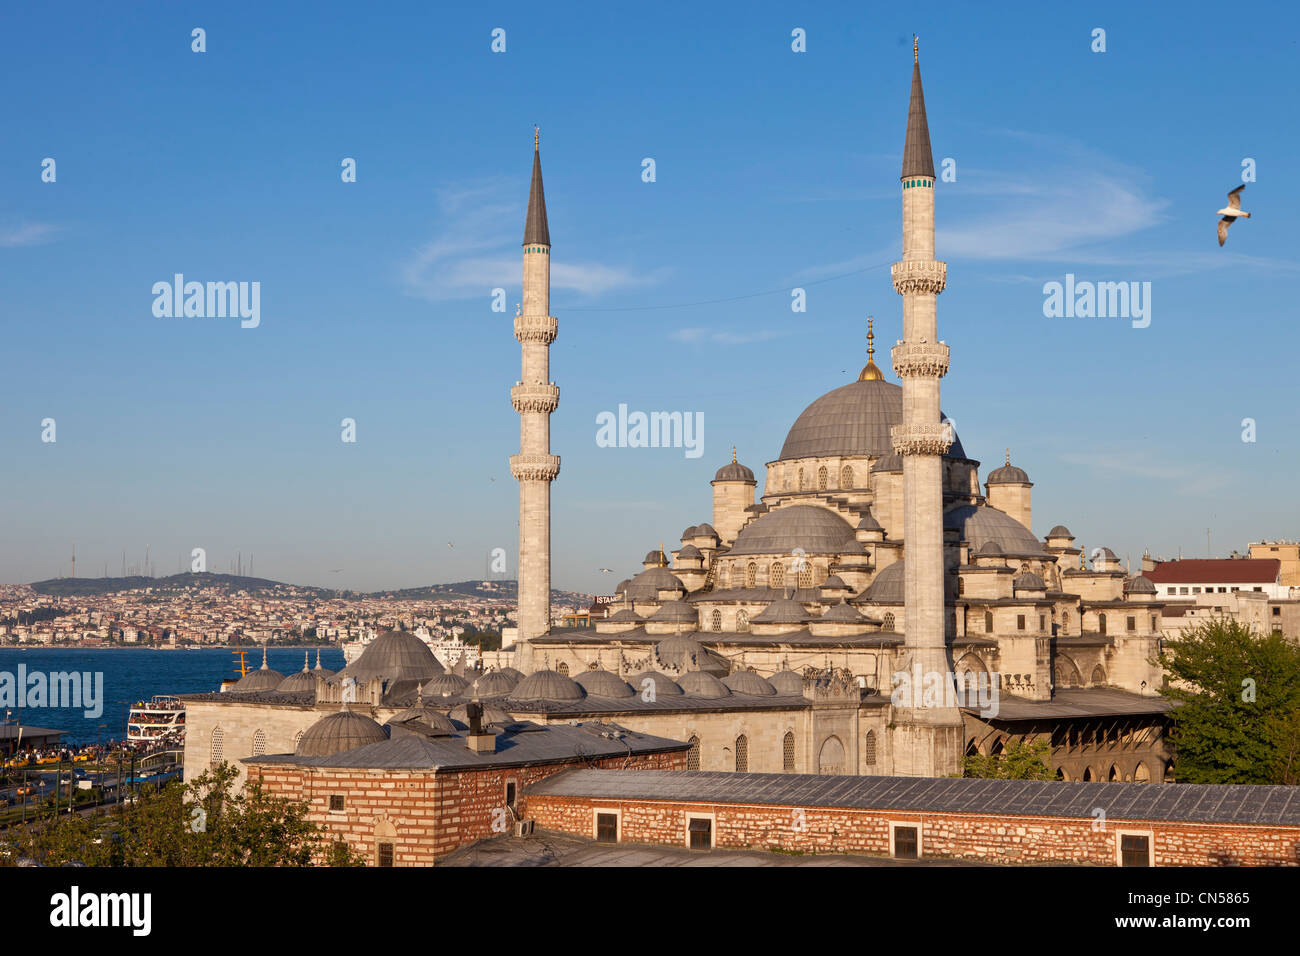 Turquía, Estambul, centro histórico catalogado como Patrimonio Mundial por la UNESCO, del distrito de Eminönü, la Yeni Cami (Mezquita nueva) Foto de stock